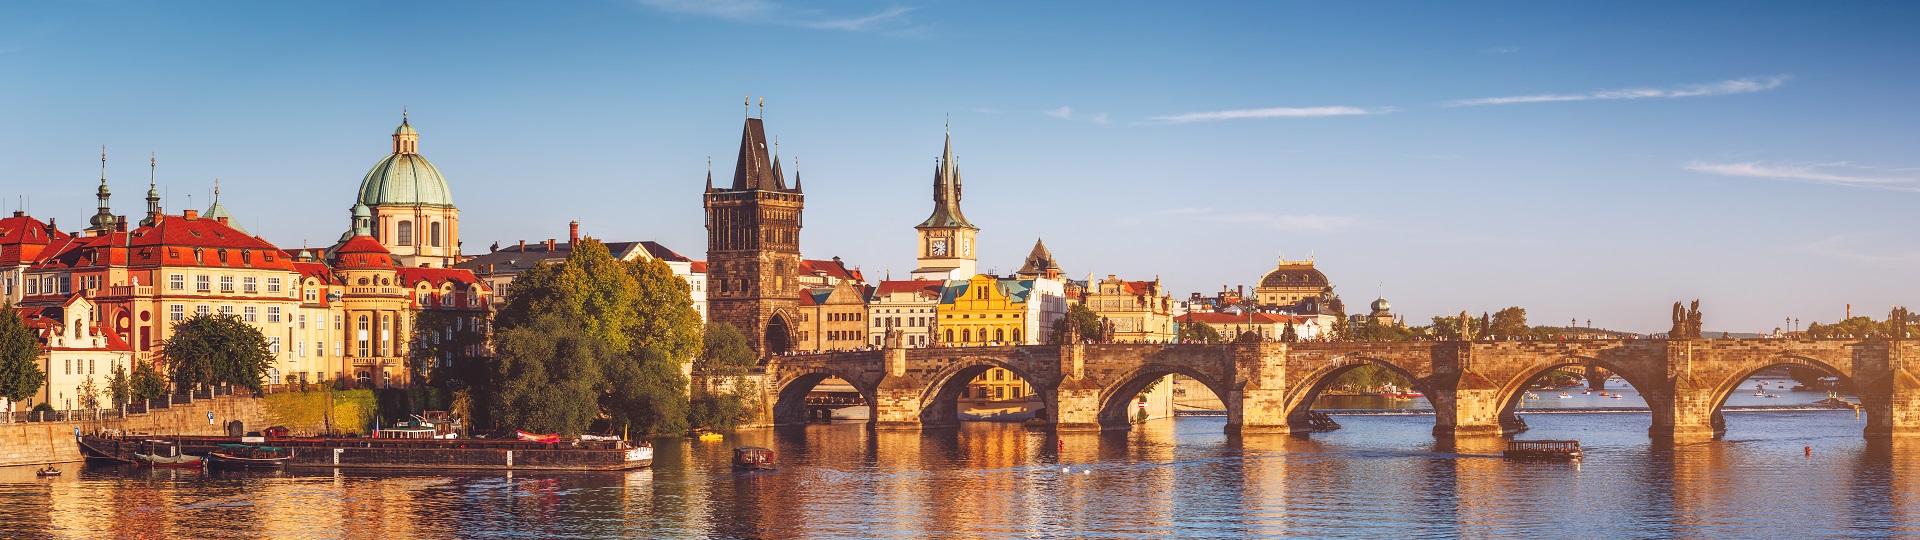 Počet obyvatel České republiky vzrostl na 10,65 milionu